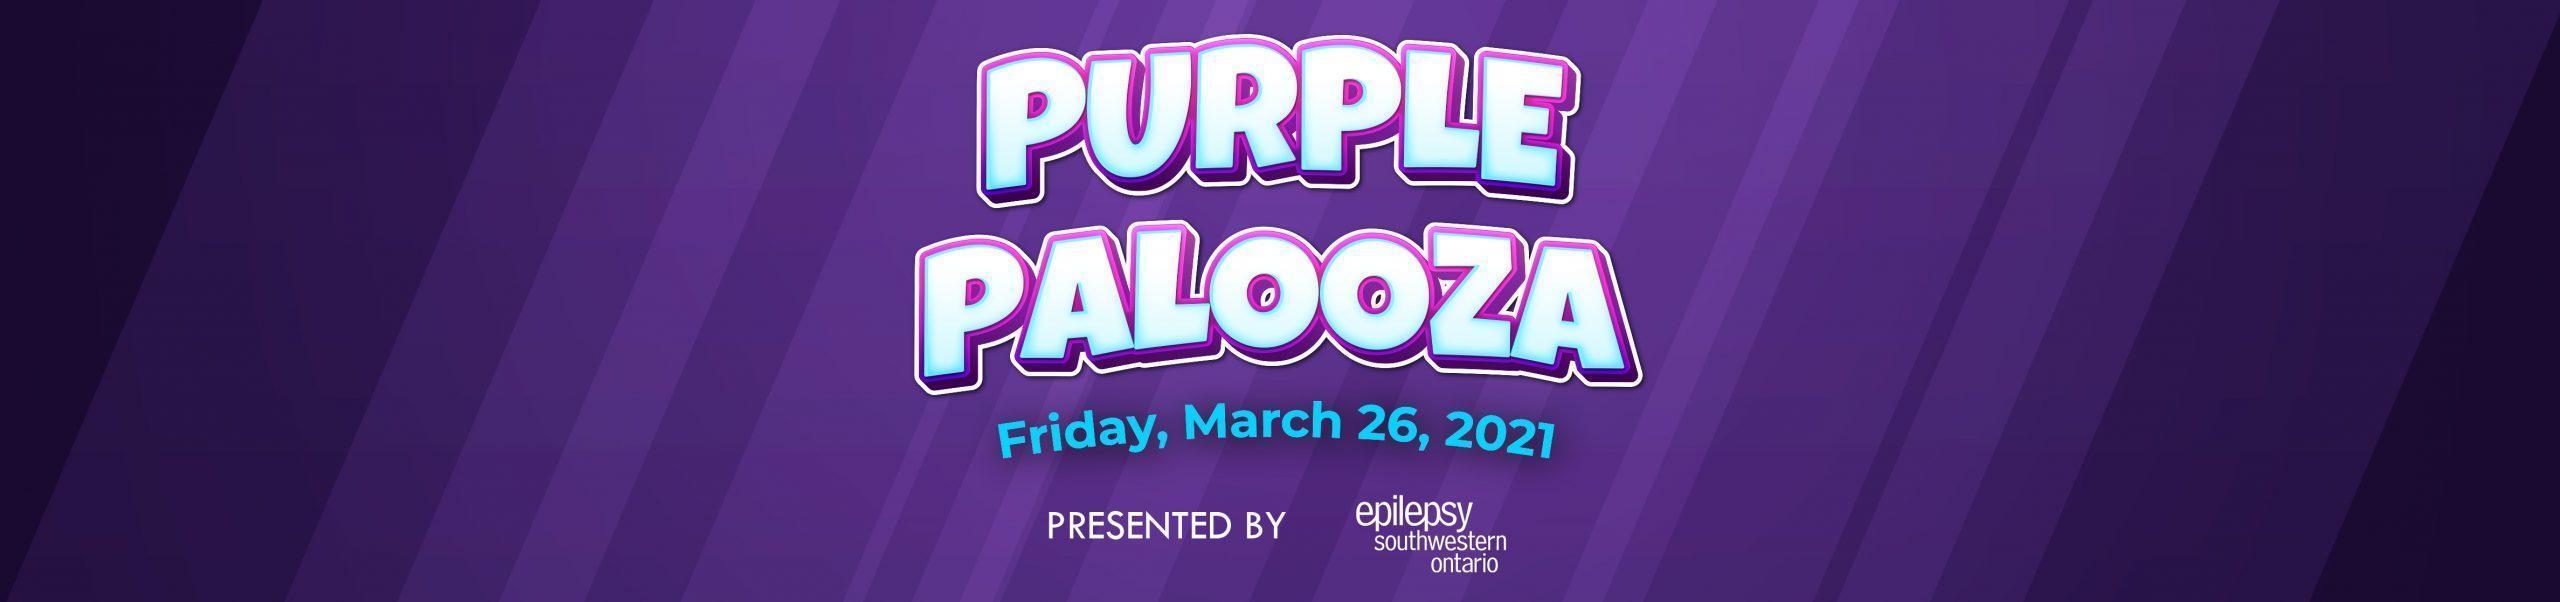 Annual Gala Epilepsy Southwestern Ontario